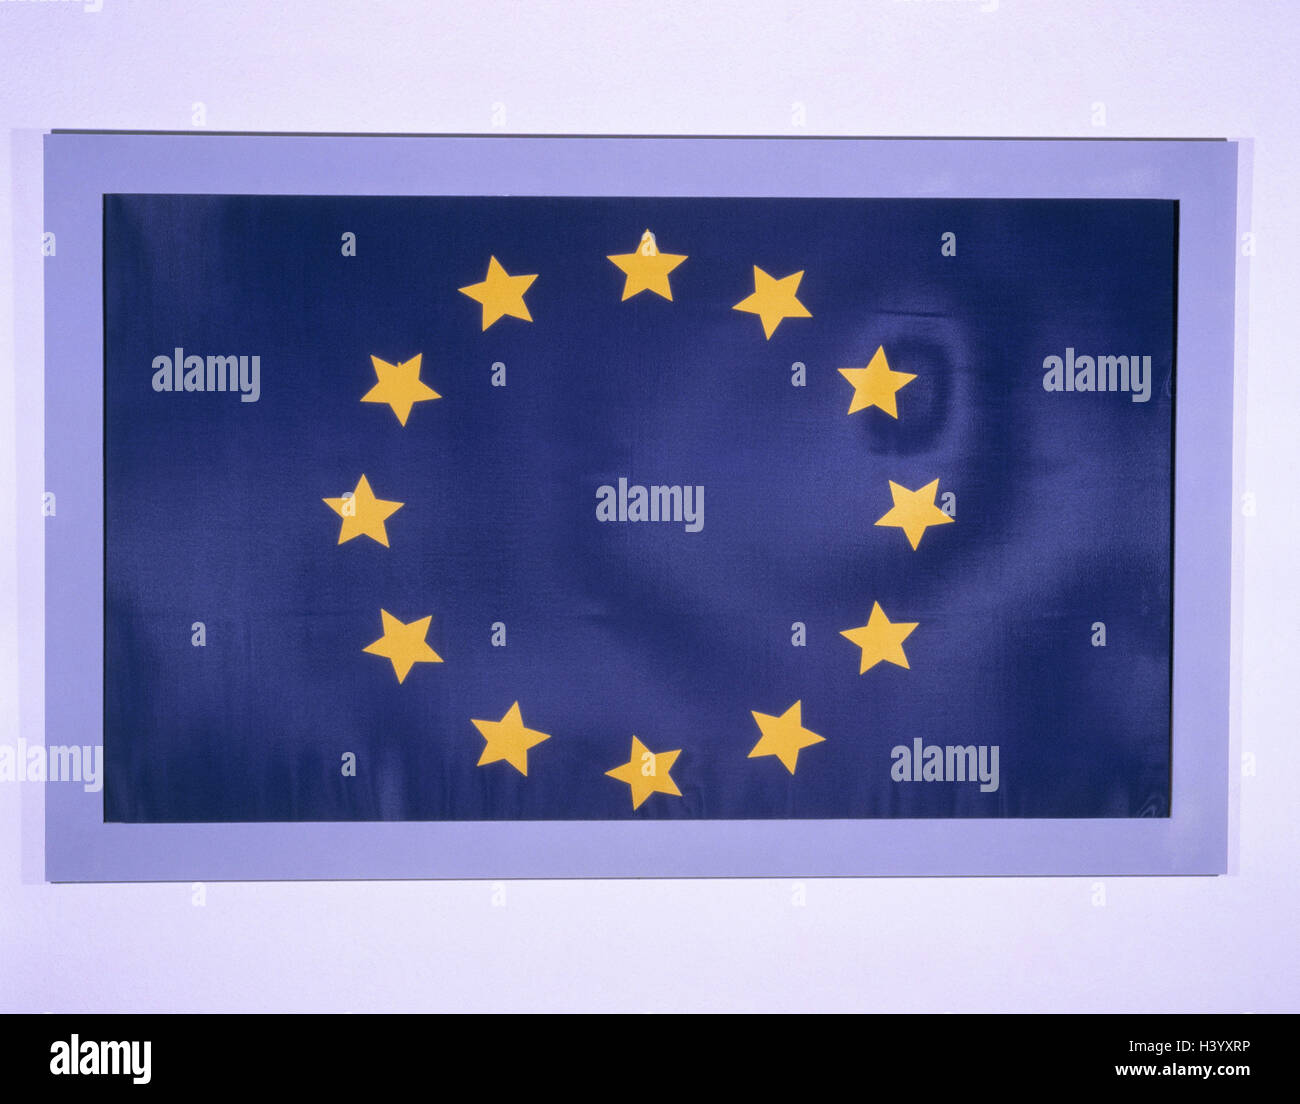 Europaische Flagge Blau Gelbe Flagge Flagge Europa Europaische Union Eu Flagge Sterne Symbol 12 Mitgliedslander Mitglieder Zwolf Eu Europaische Gemeinschaft Produktfotografie Noch Leben Stockfotografie Alamy